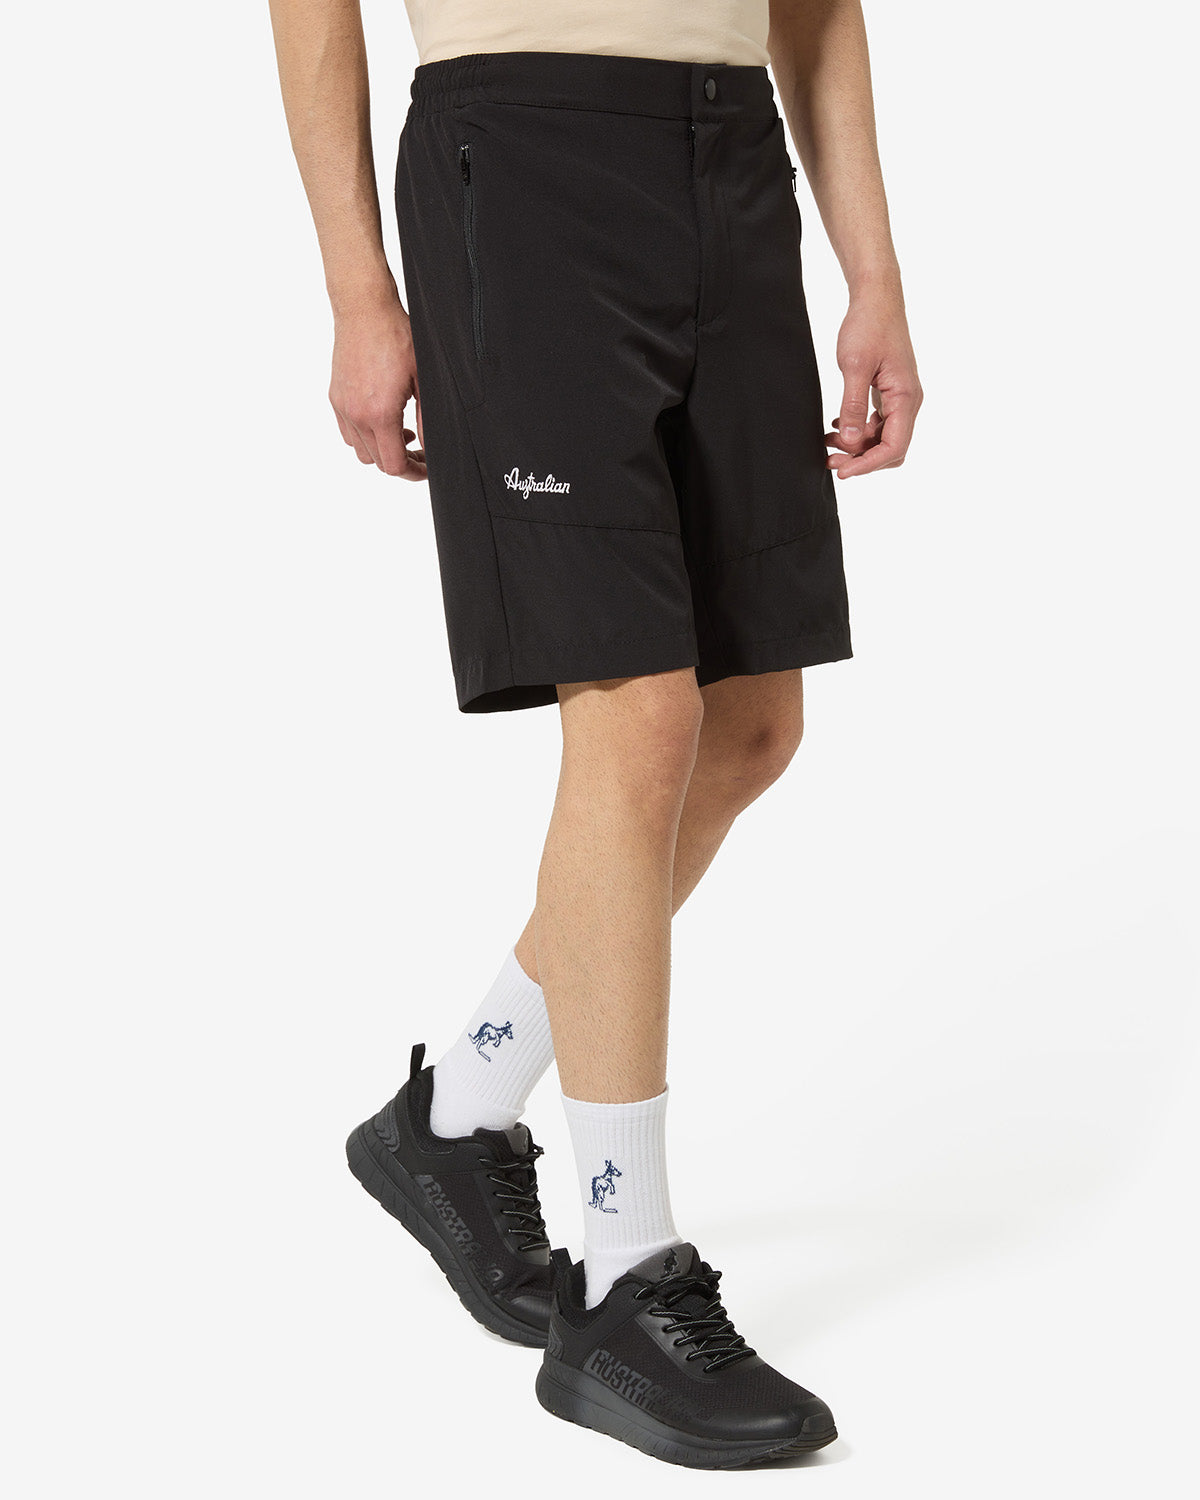 City Shorts: Australian Sportswear